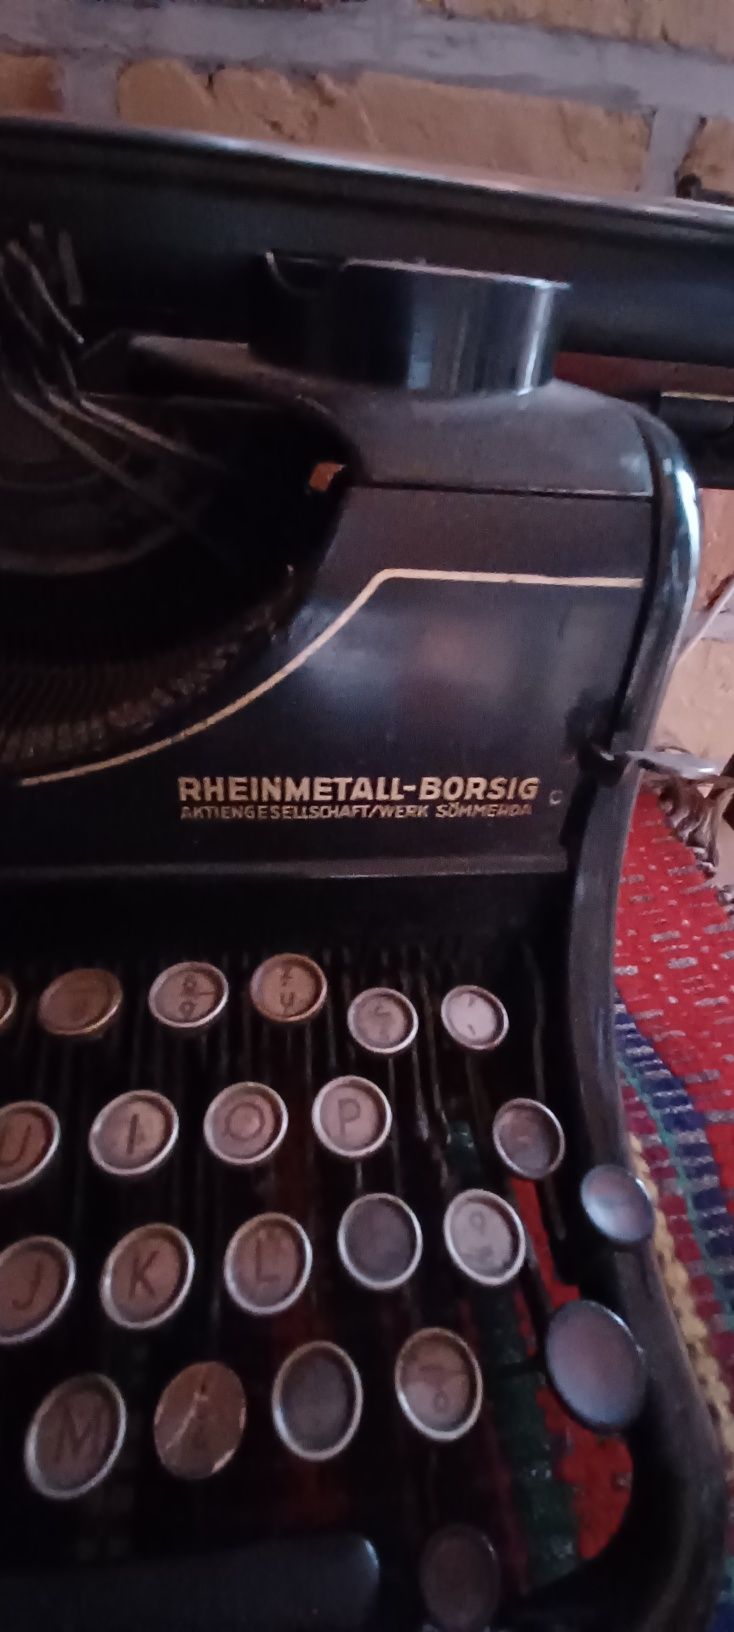 Maszyna do pisania Rheinmetal